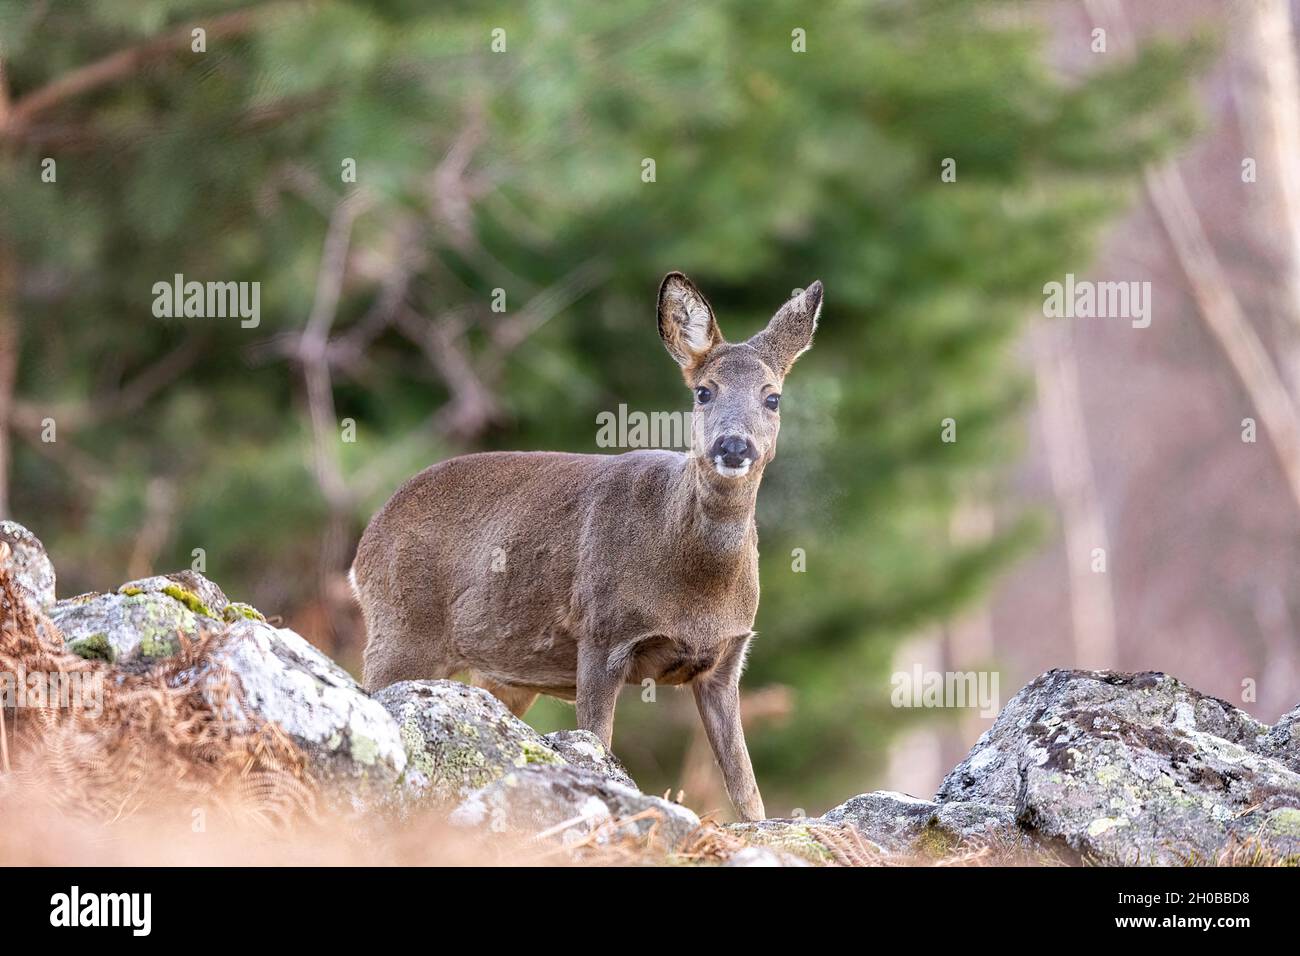 Roe deer (Capreolus capreolus) female breathing vapor, Alsace, France Stock Photo